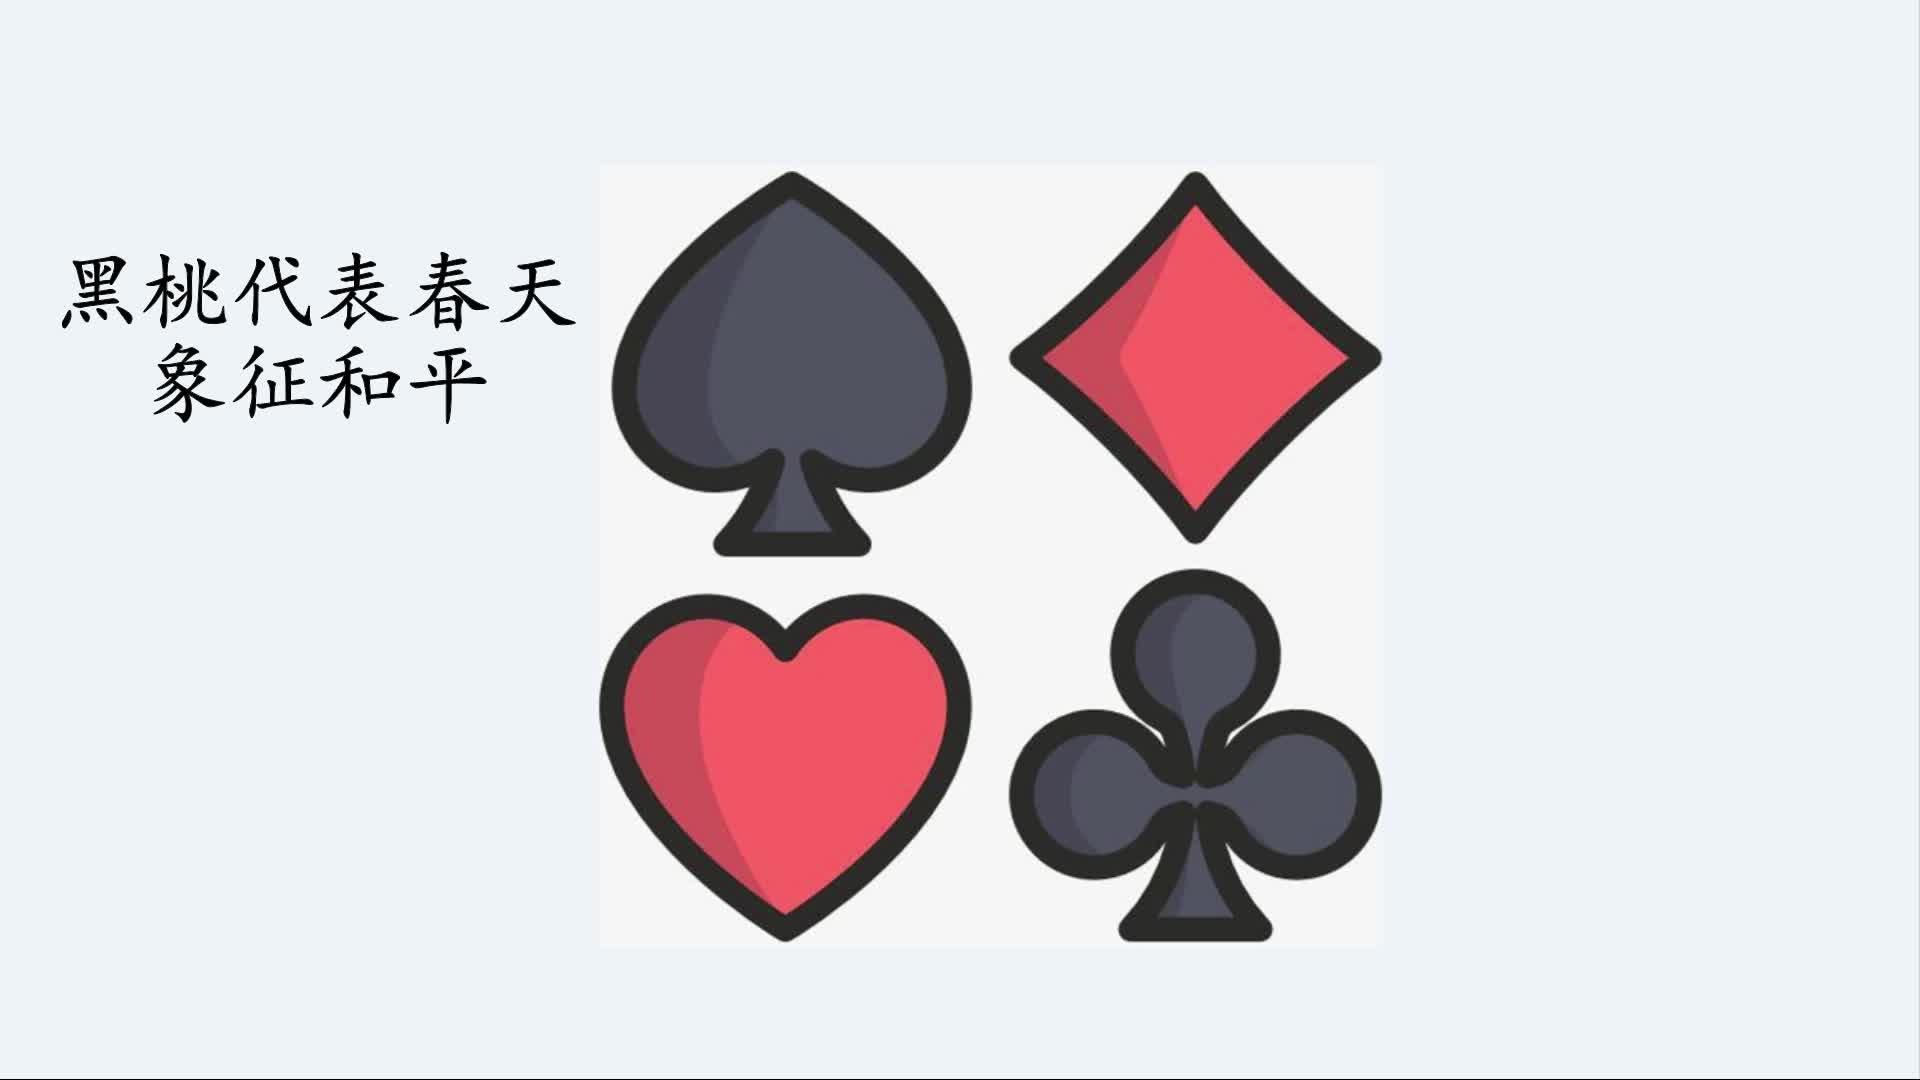 公务员 67关注扑克牌魔术 复制粘贴,想要什么牌就有什么牌发布于 21